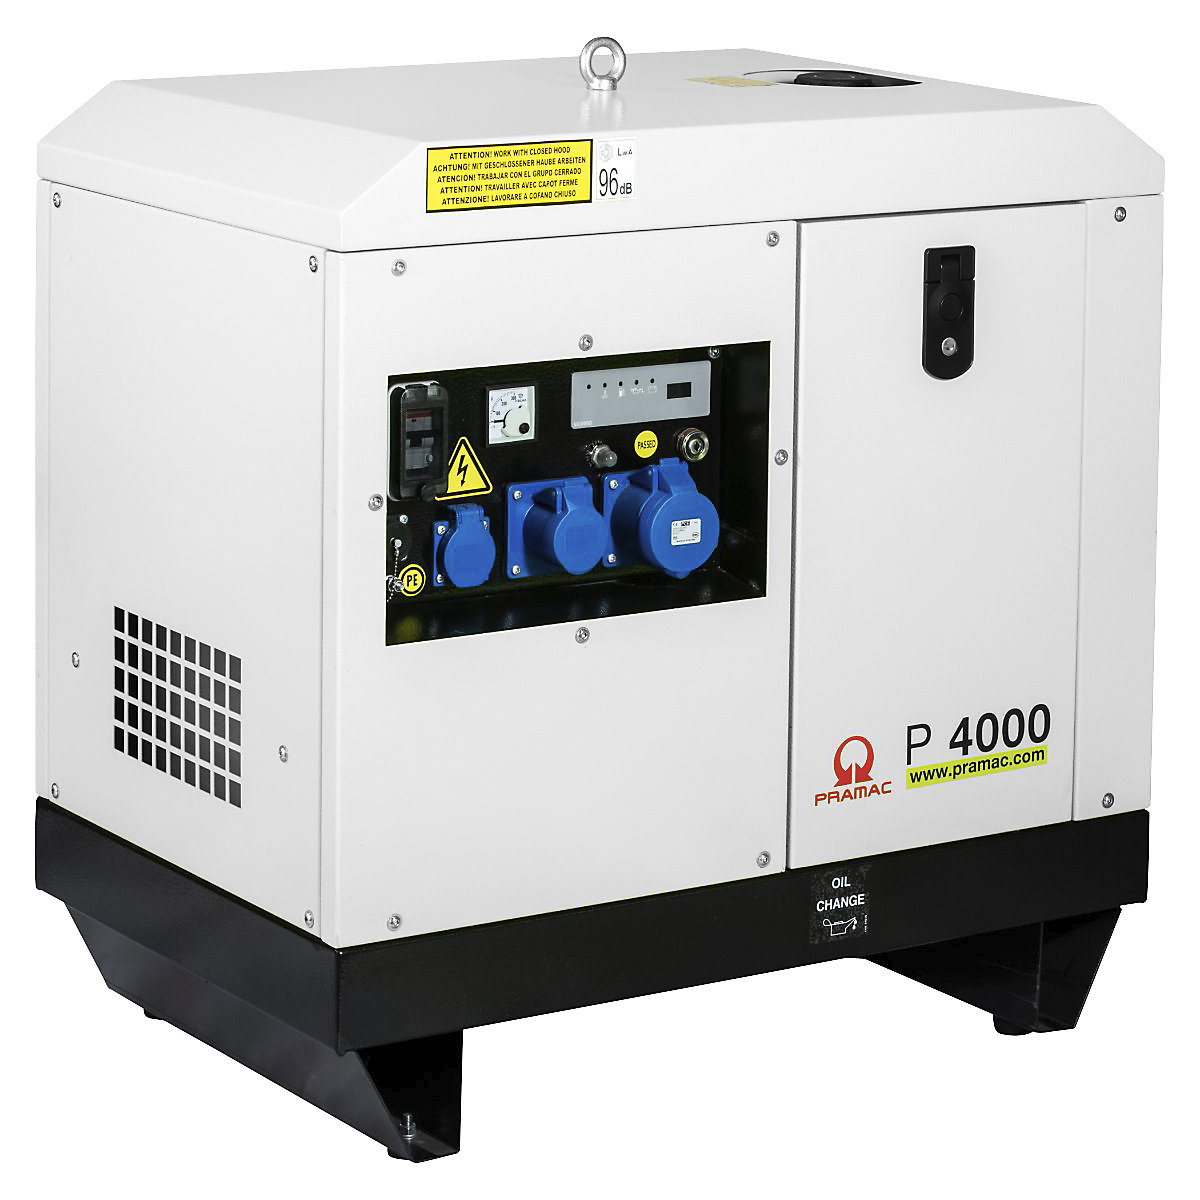 P series power generator, diesel, 230 V - Pramac